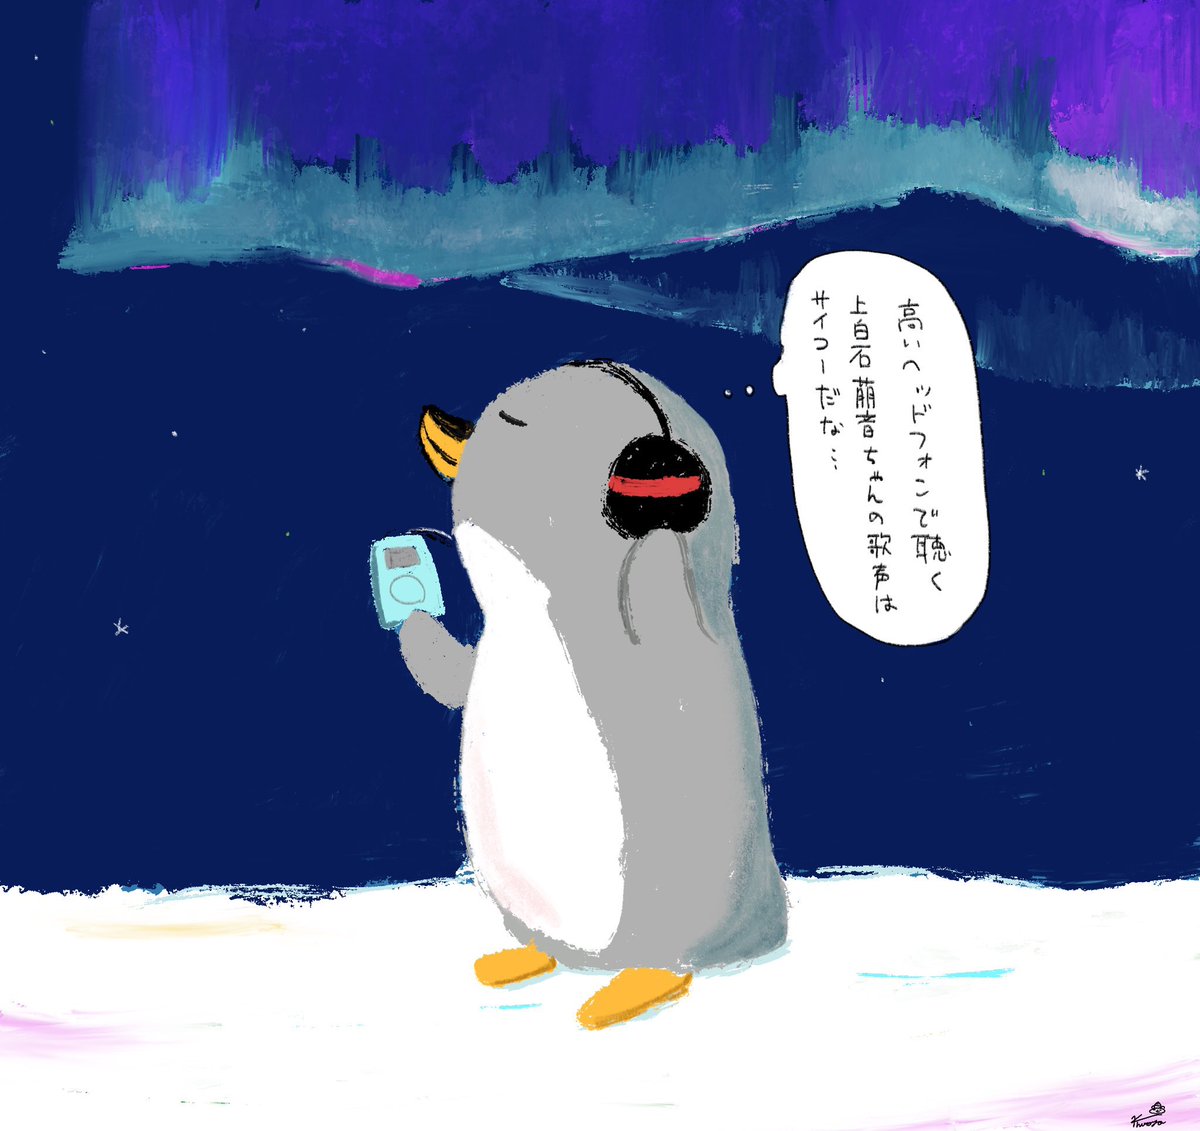 ぽててんさん(.pottepote_dazo )のペンギンチャンのぬいぐるみを描かせてもらいましたー!✨ 